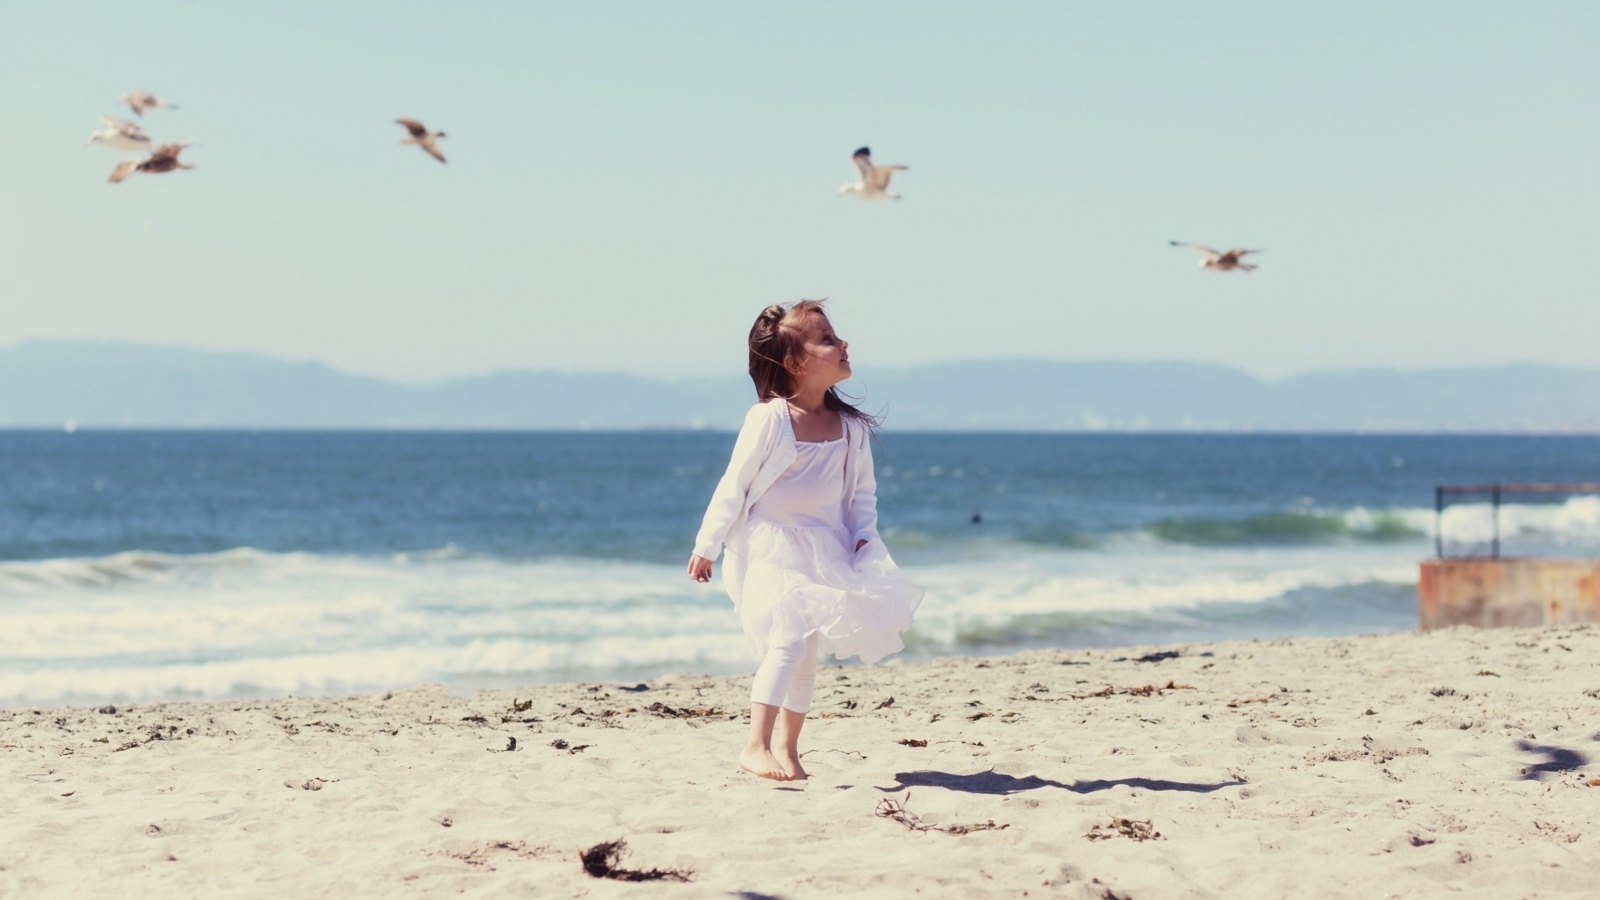 Little Girl At Beach And Seagulls screenshot #1 1600x900